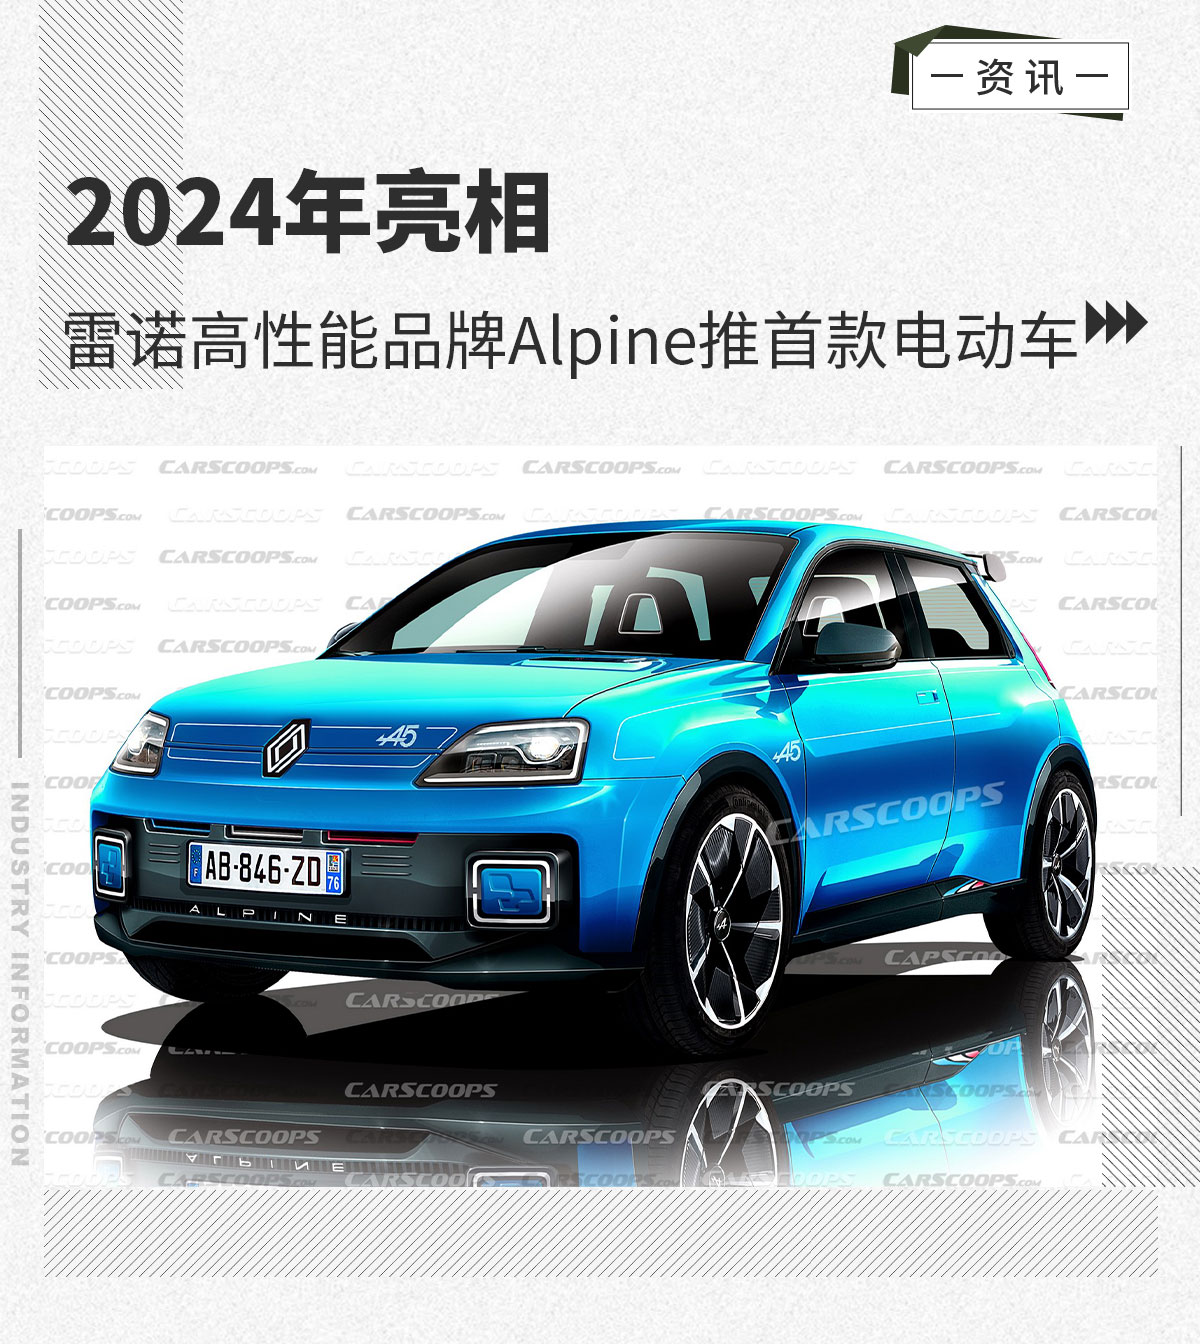 雷诺高性能品牌Alpine推首款电动车 2024年亮相